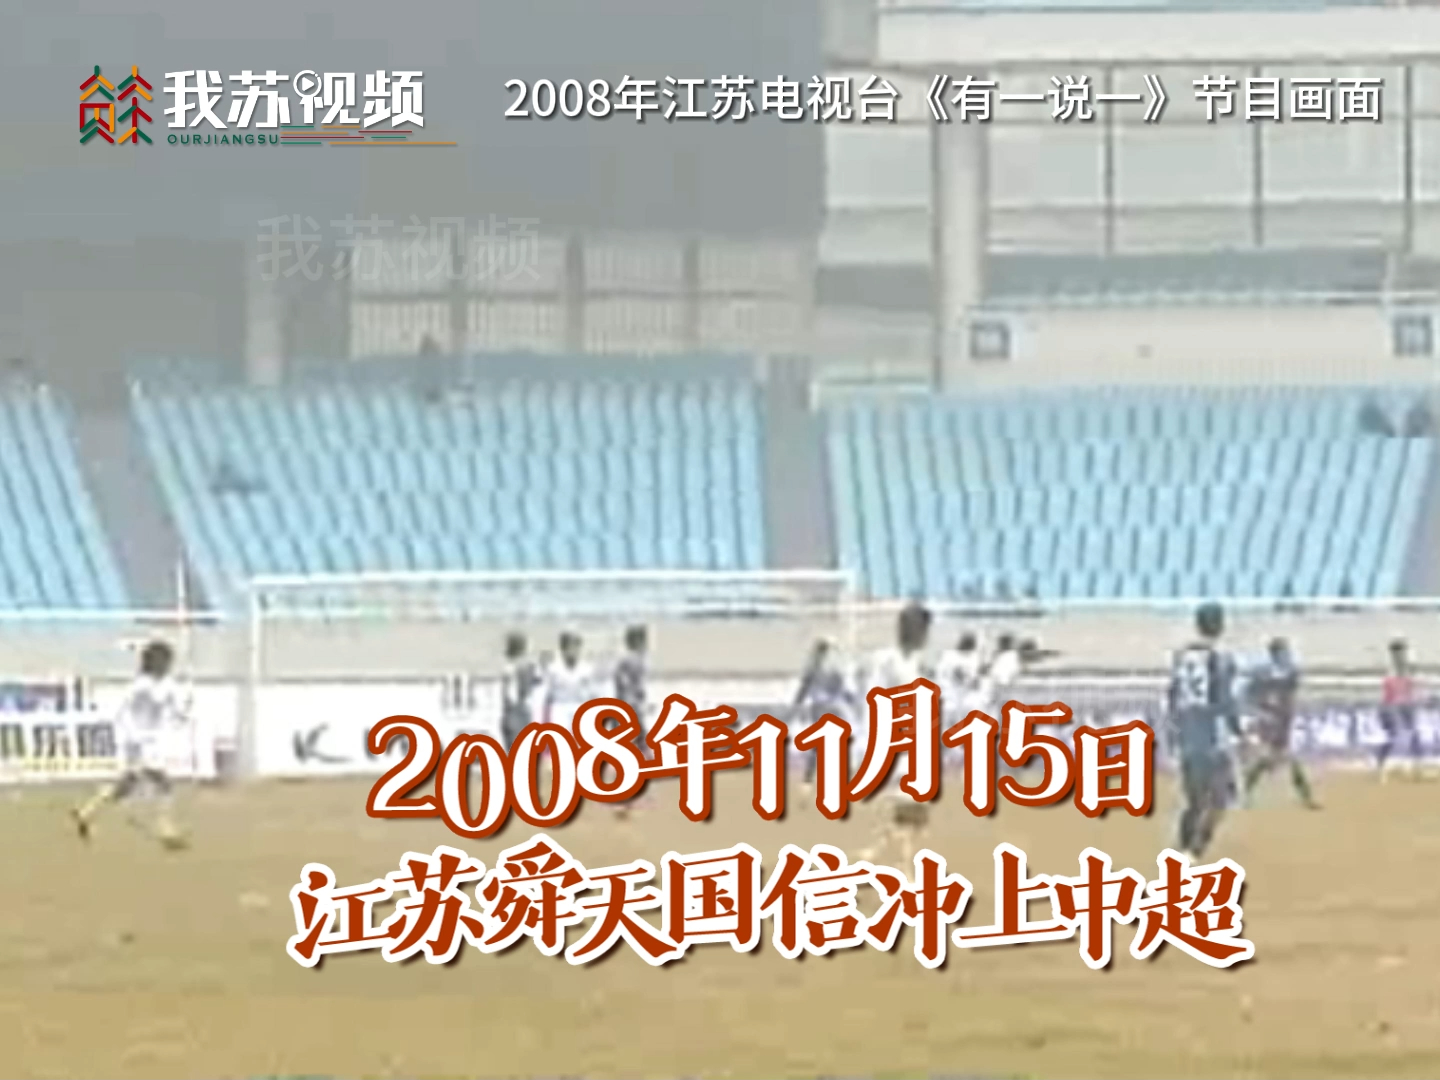 2008年江苏舜天冲超成功